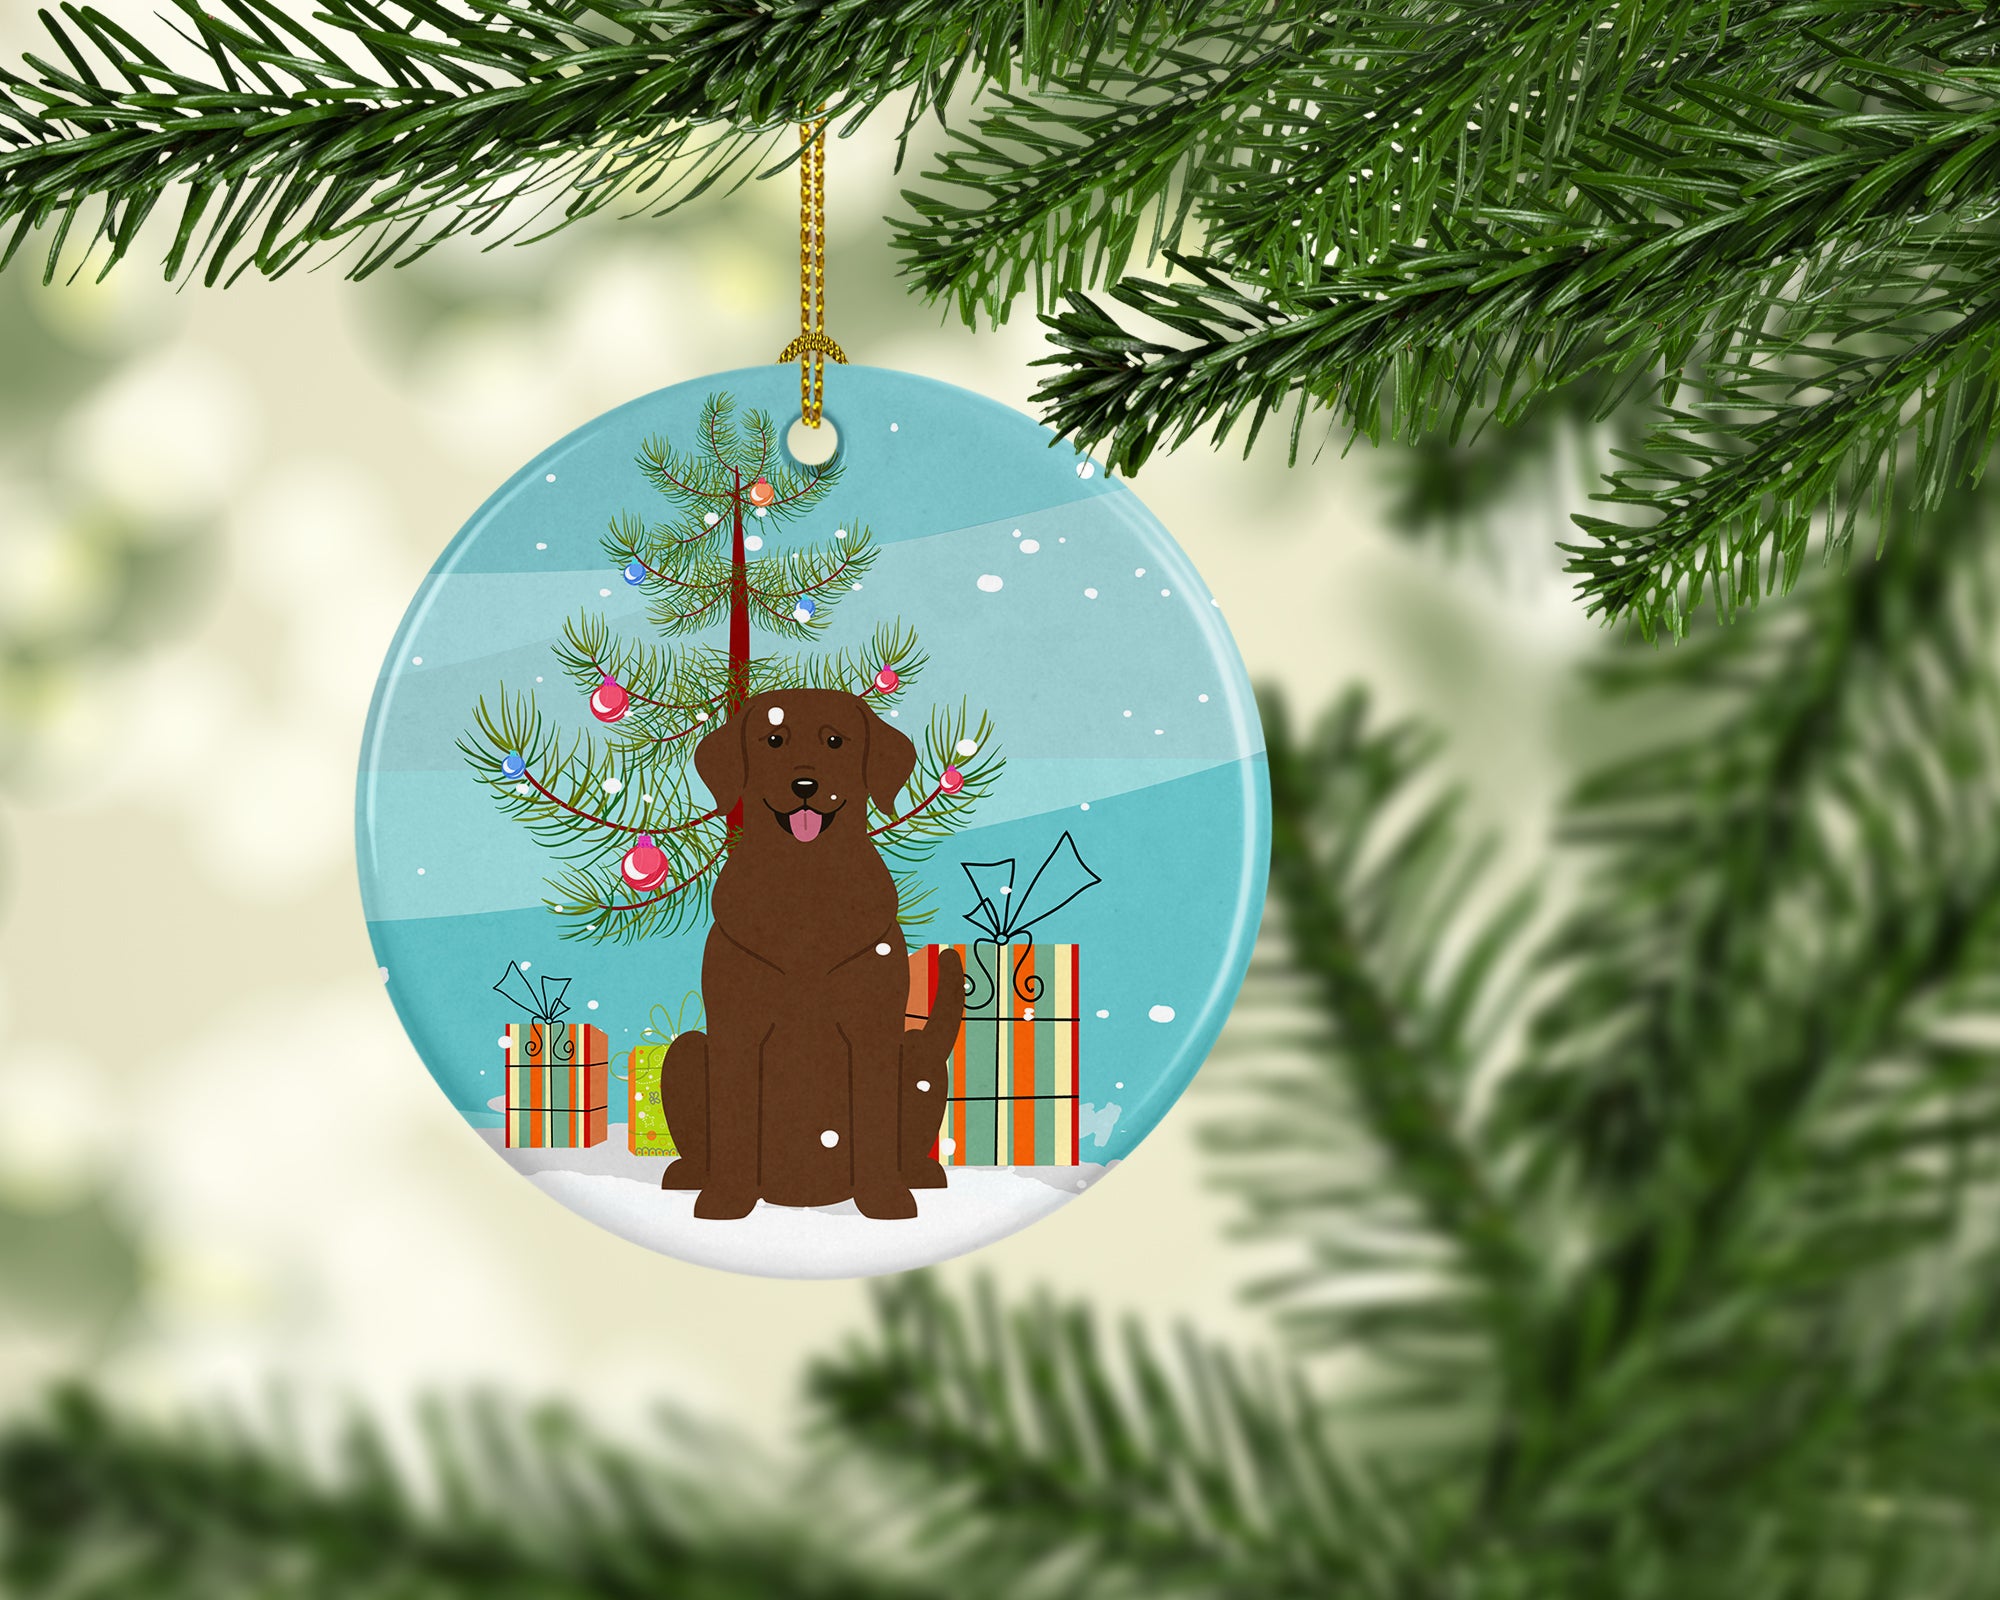 Merry Christmas Tree Chocolate Labrador Ceramic Ornament BB4181CO1 - the-store.com